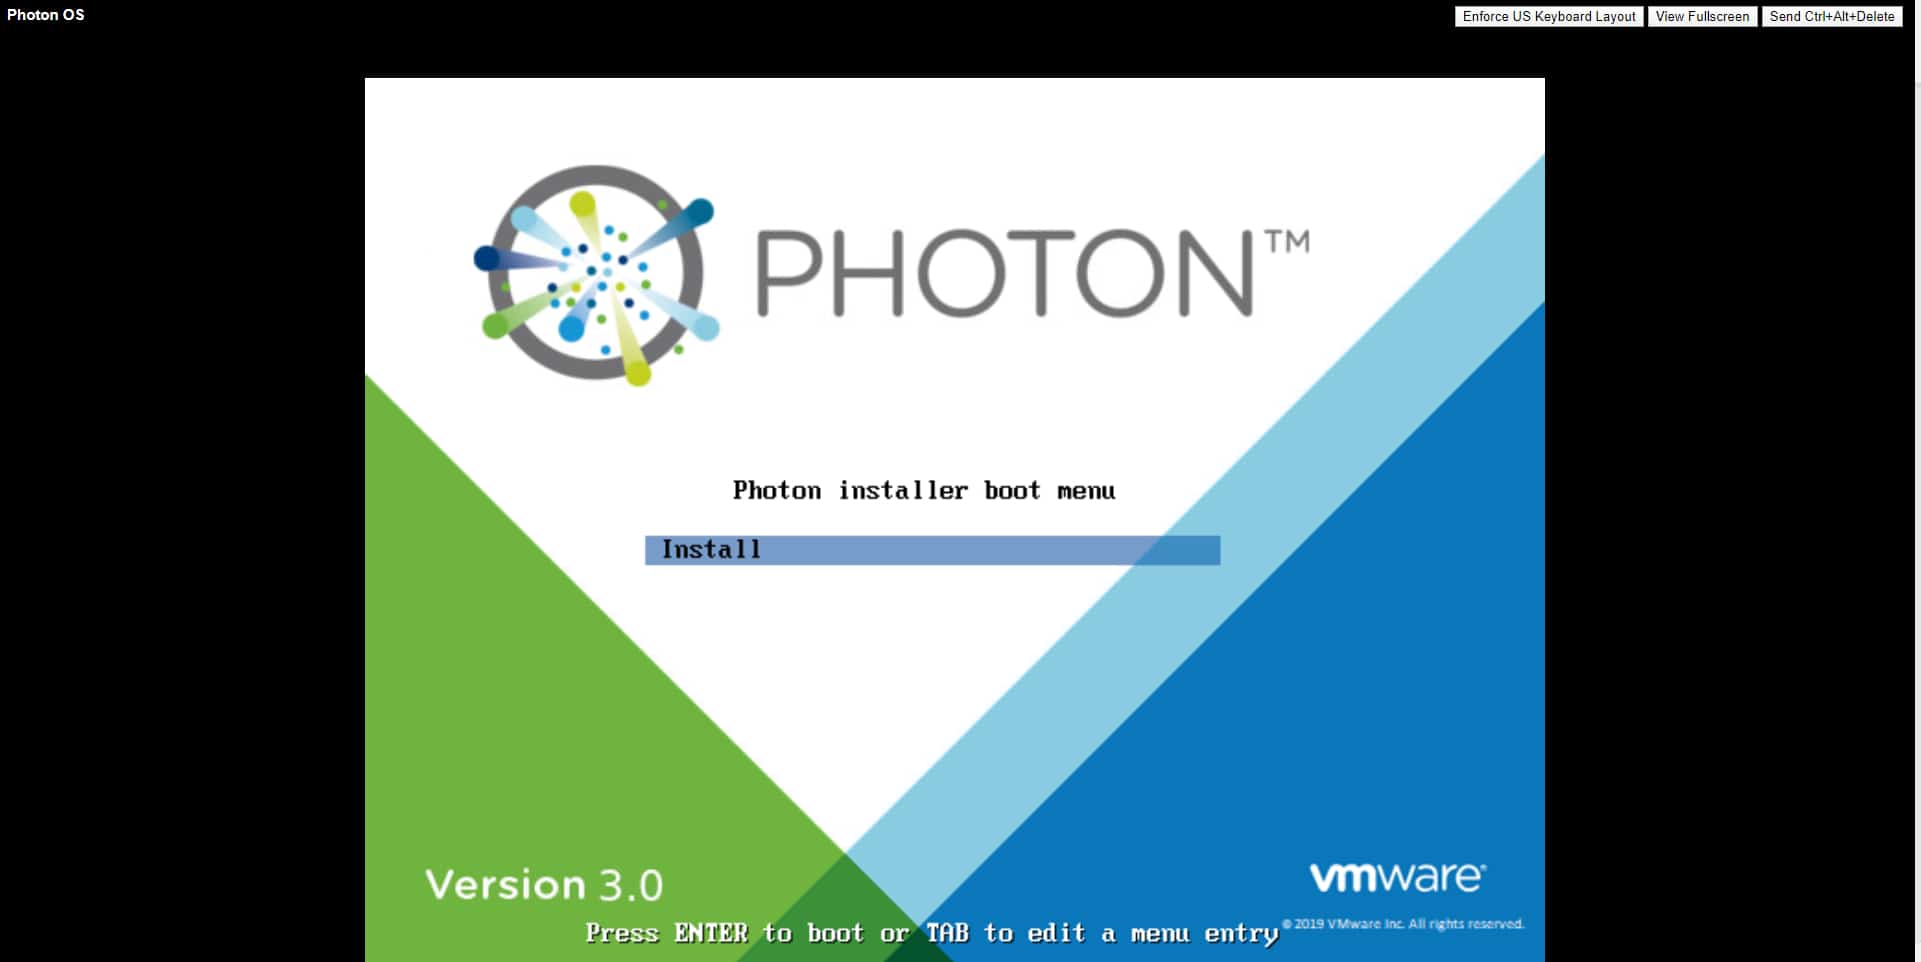 Photon OS installer boot menu